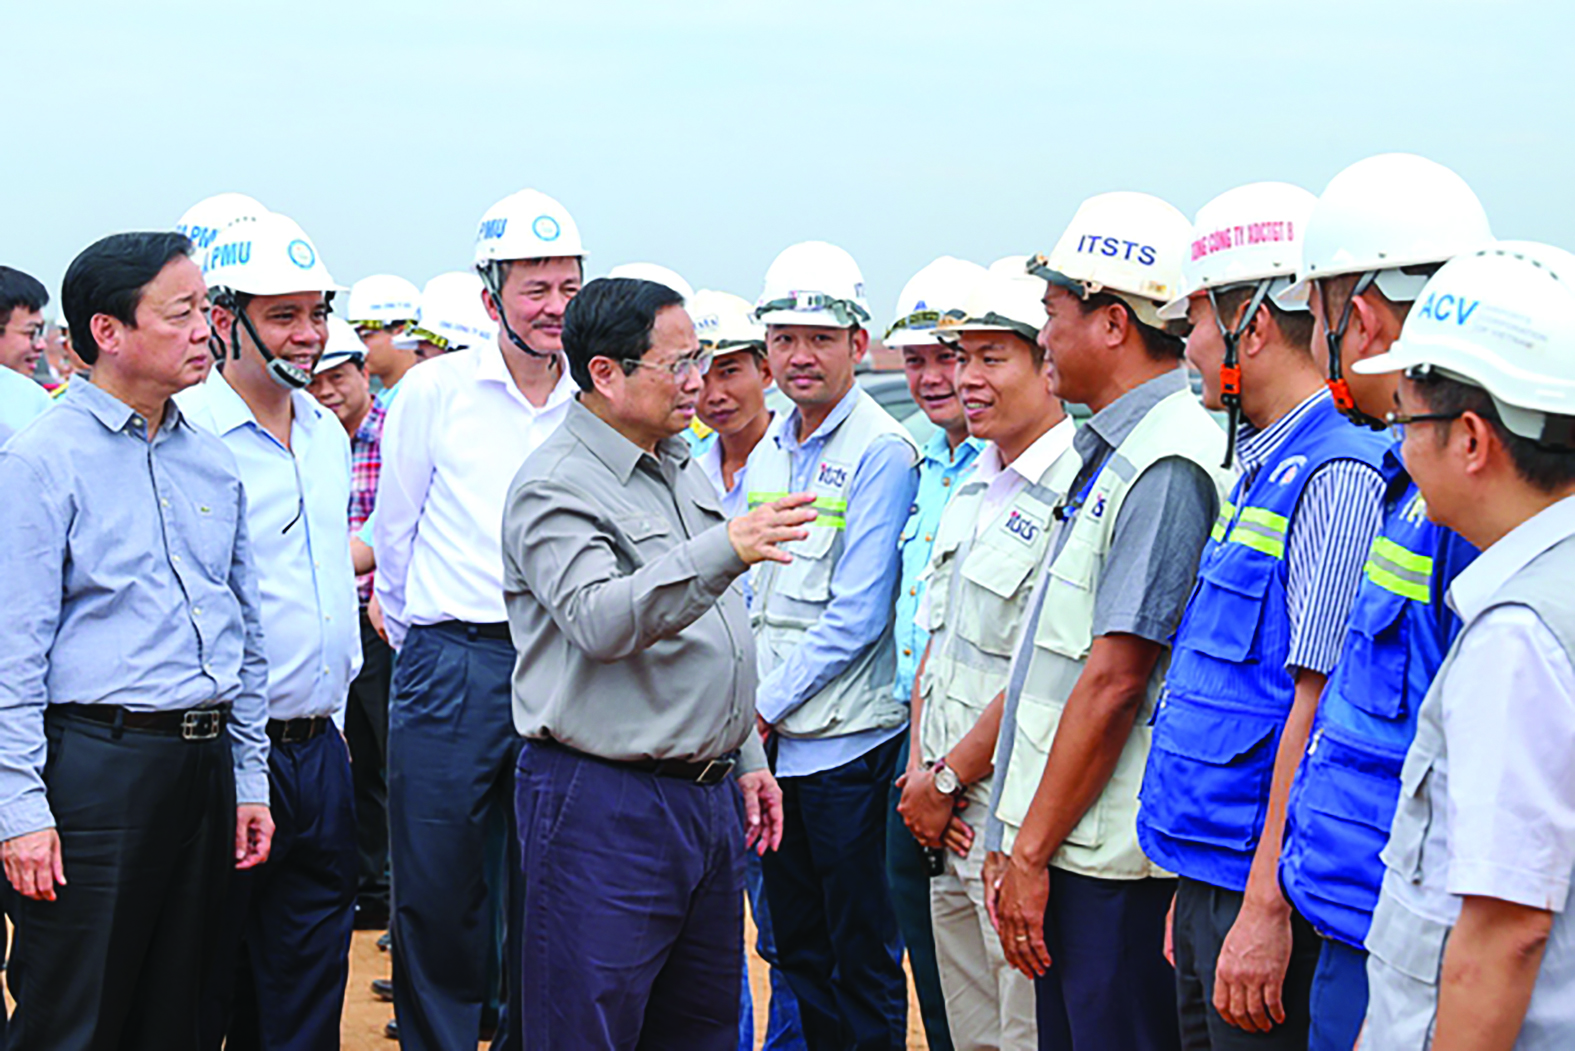  Thủ tướng Phạm Minh Chínhp/trực tiếp thị sát công trường xây dựng và trao đổi chủ đầu tư, đơn vị thi công về dự án xây dựng Cảng hàng không quốc tế Long Thành giai đoạn 1.p/Ảnh: Nhật Bắc